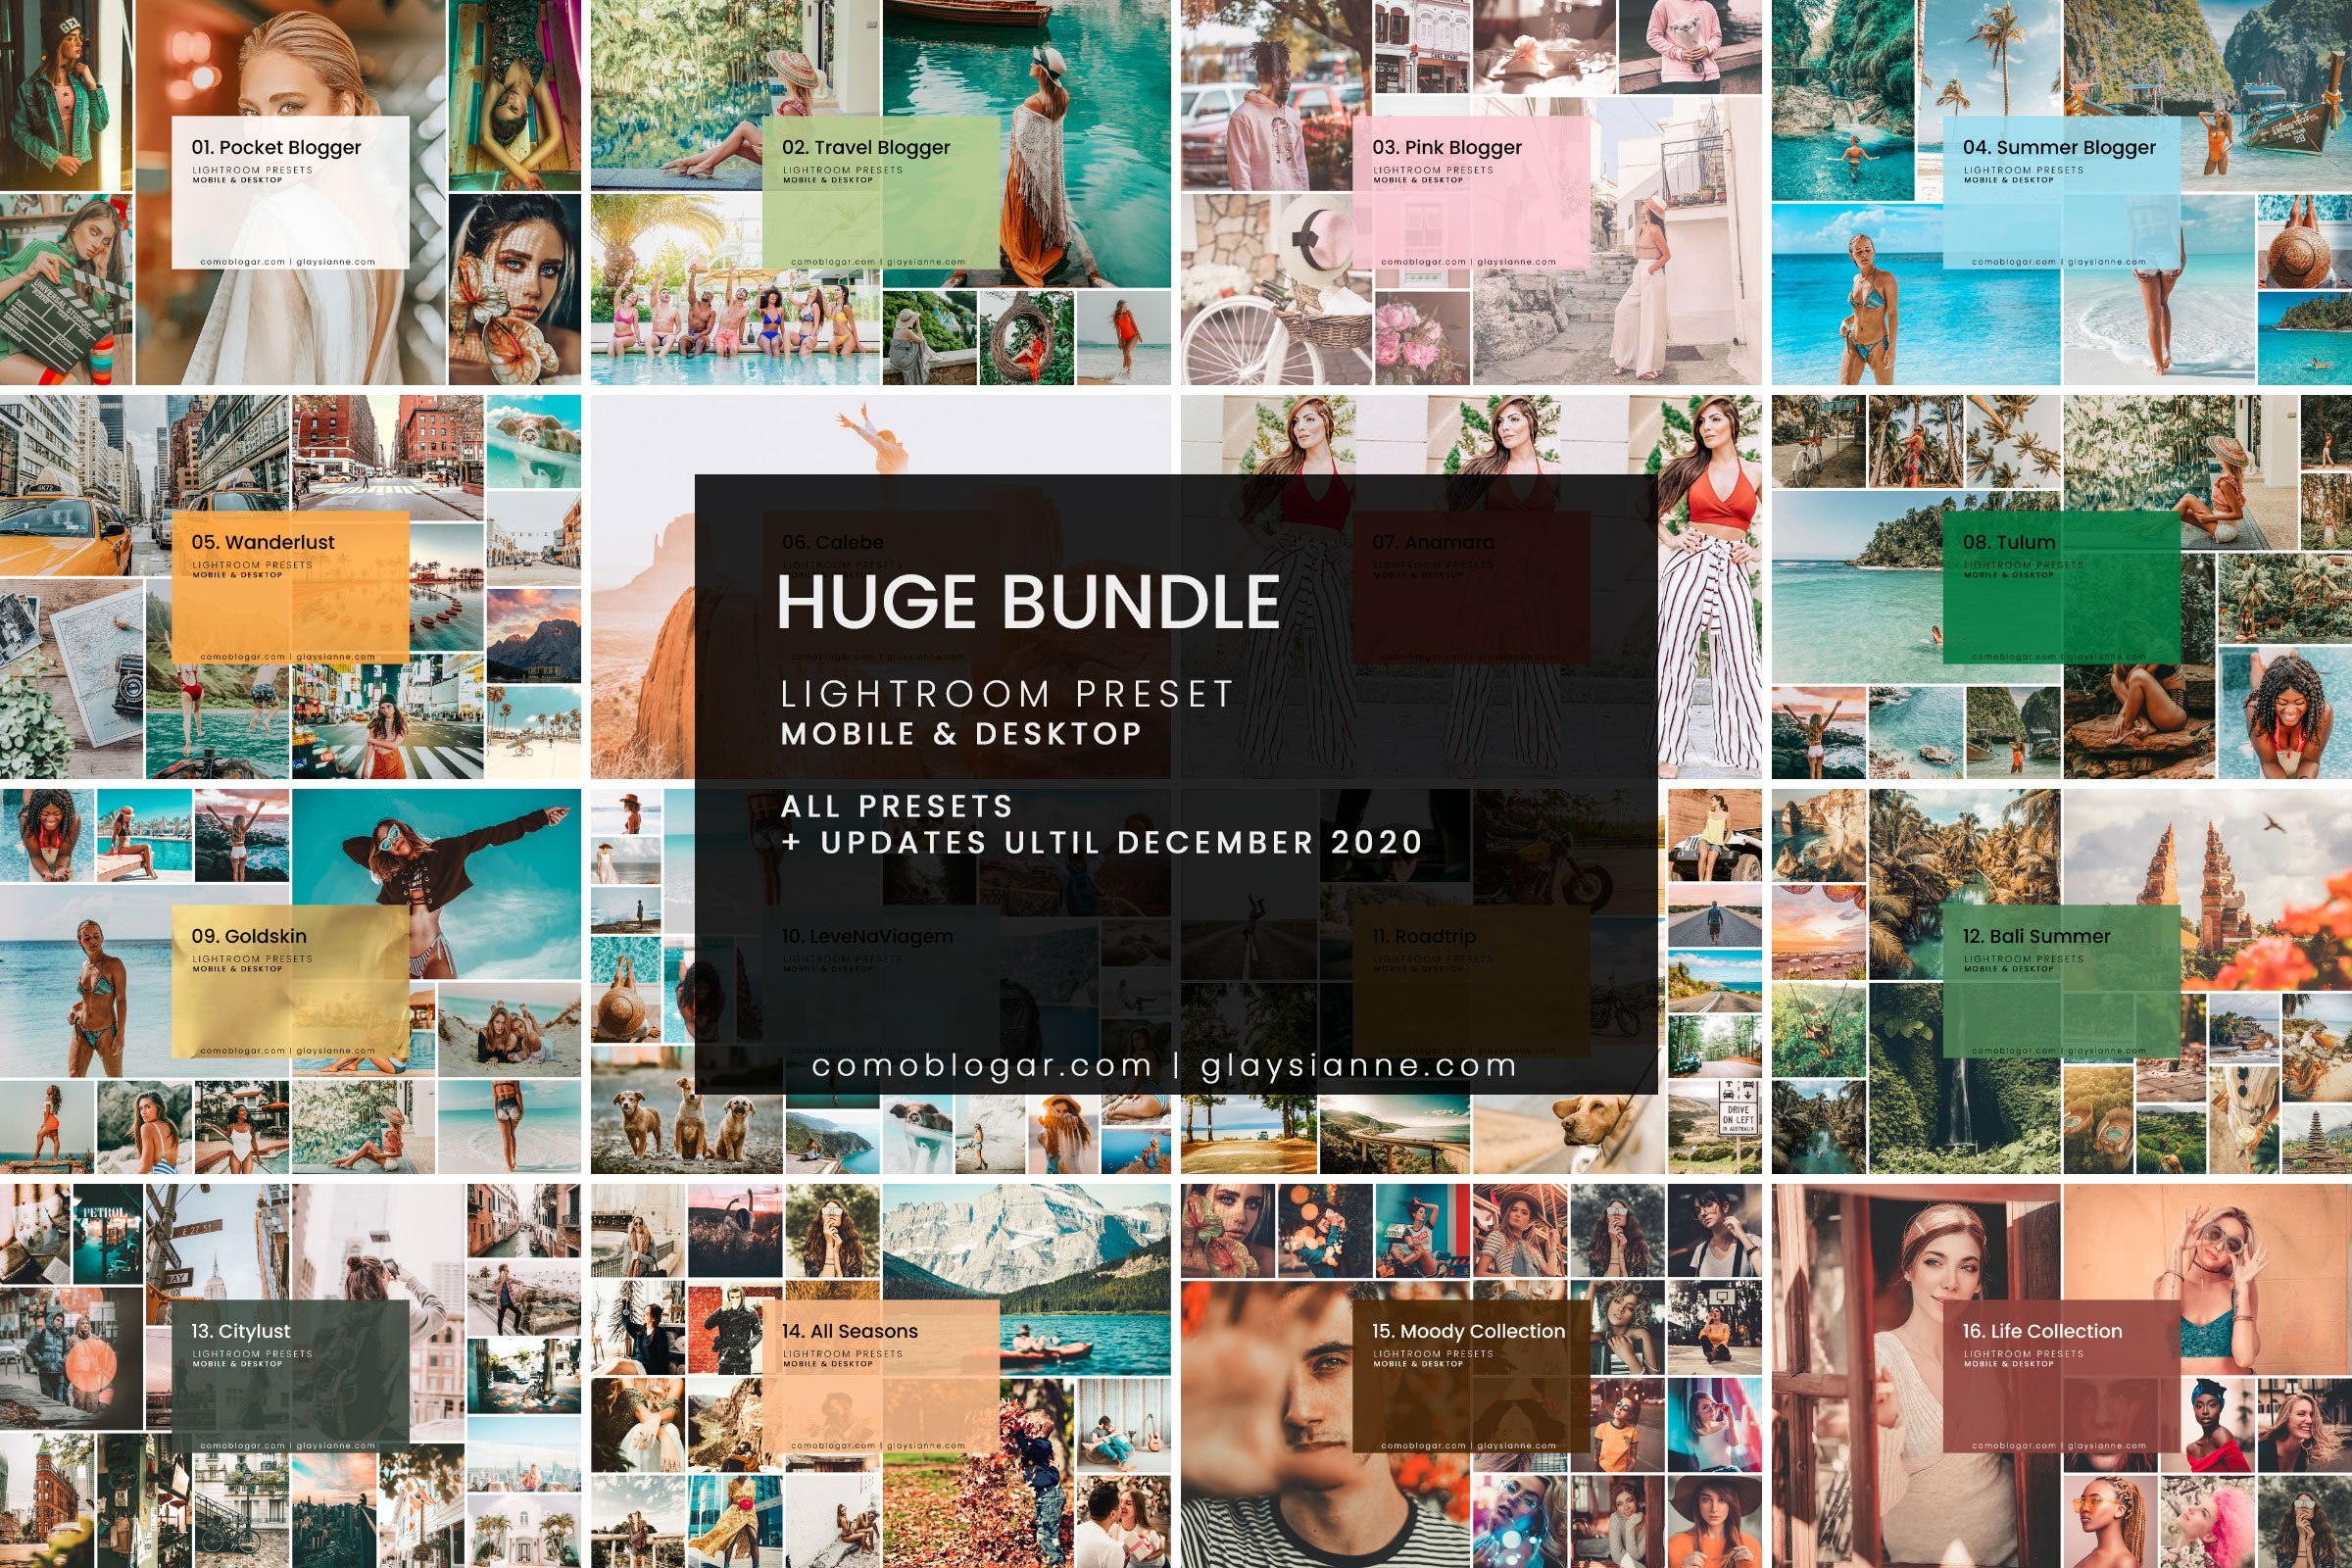 HUGE Bundle Presets (108 Packs)cover image.